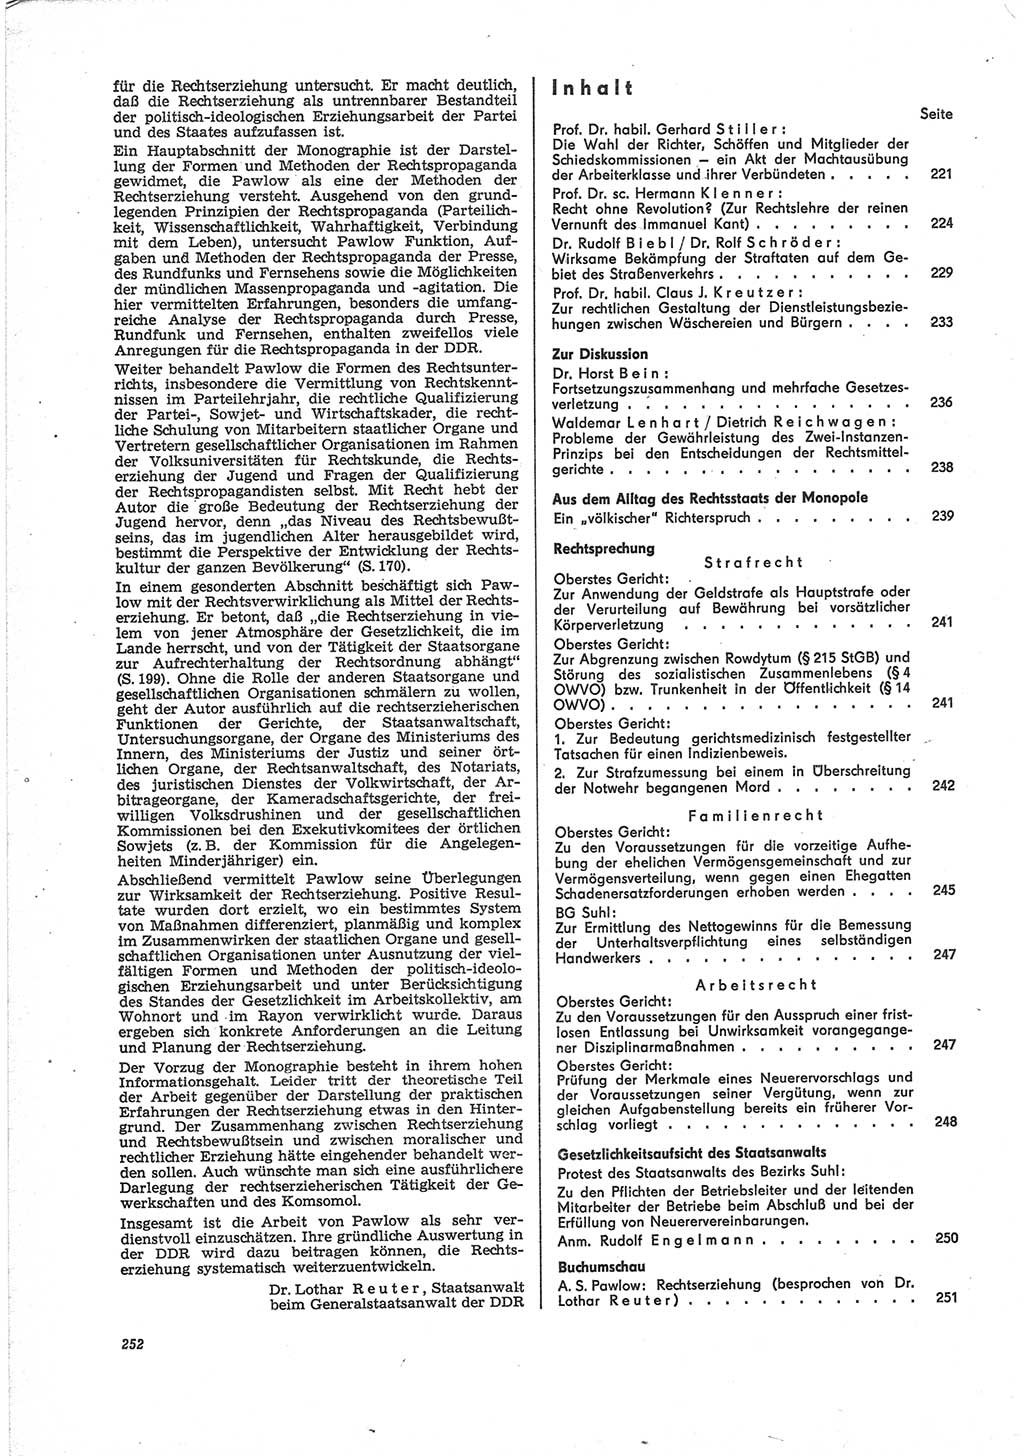 Neue Justiz (NJ), Zeitschrift für Recht und Rechtswissenschaft [Deutsche Demokratische Republik (DDR)], 28. Jahrgang 1974, Seite 252 (NJ DDR 1974, S. 252)